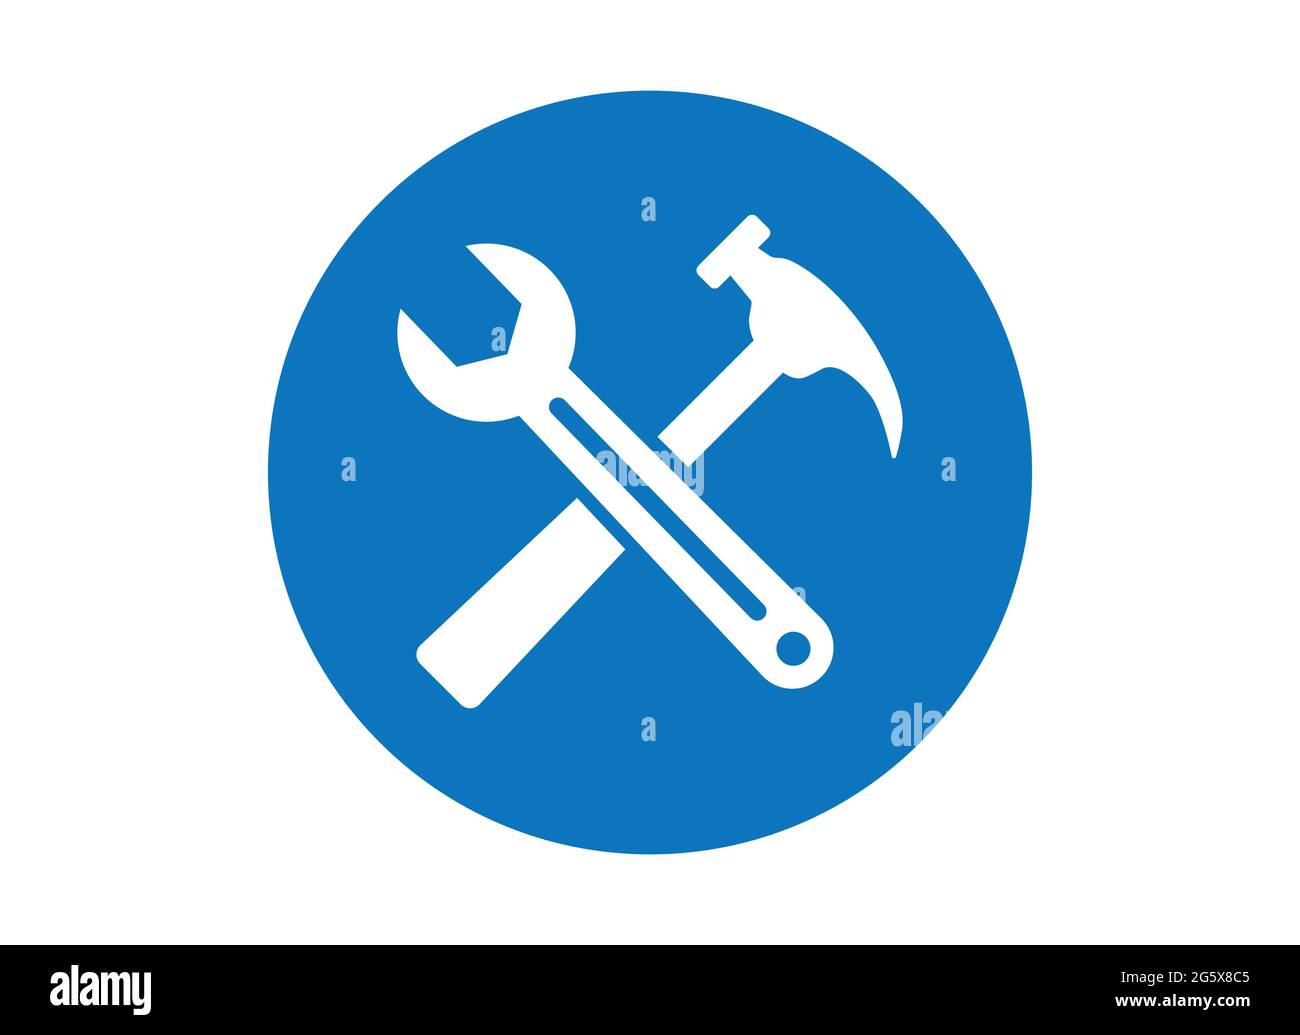 Schraubenschlüssel und Hammer blaues Knopfsymbol für mechanische Reparatur- und Wartungsvektordarstellung Stock Vektor